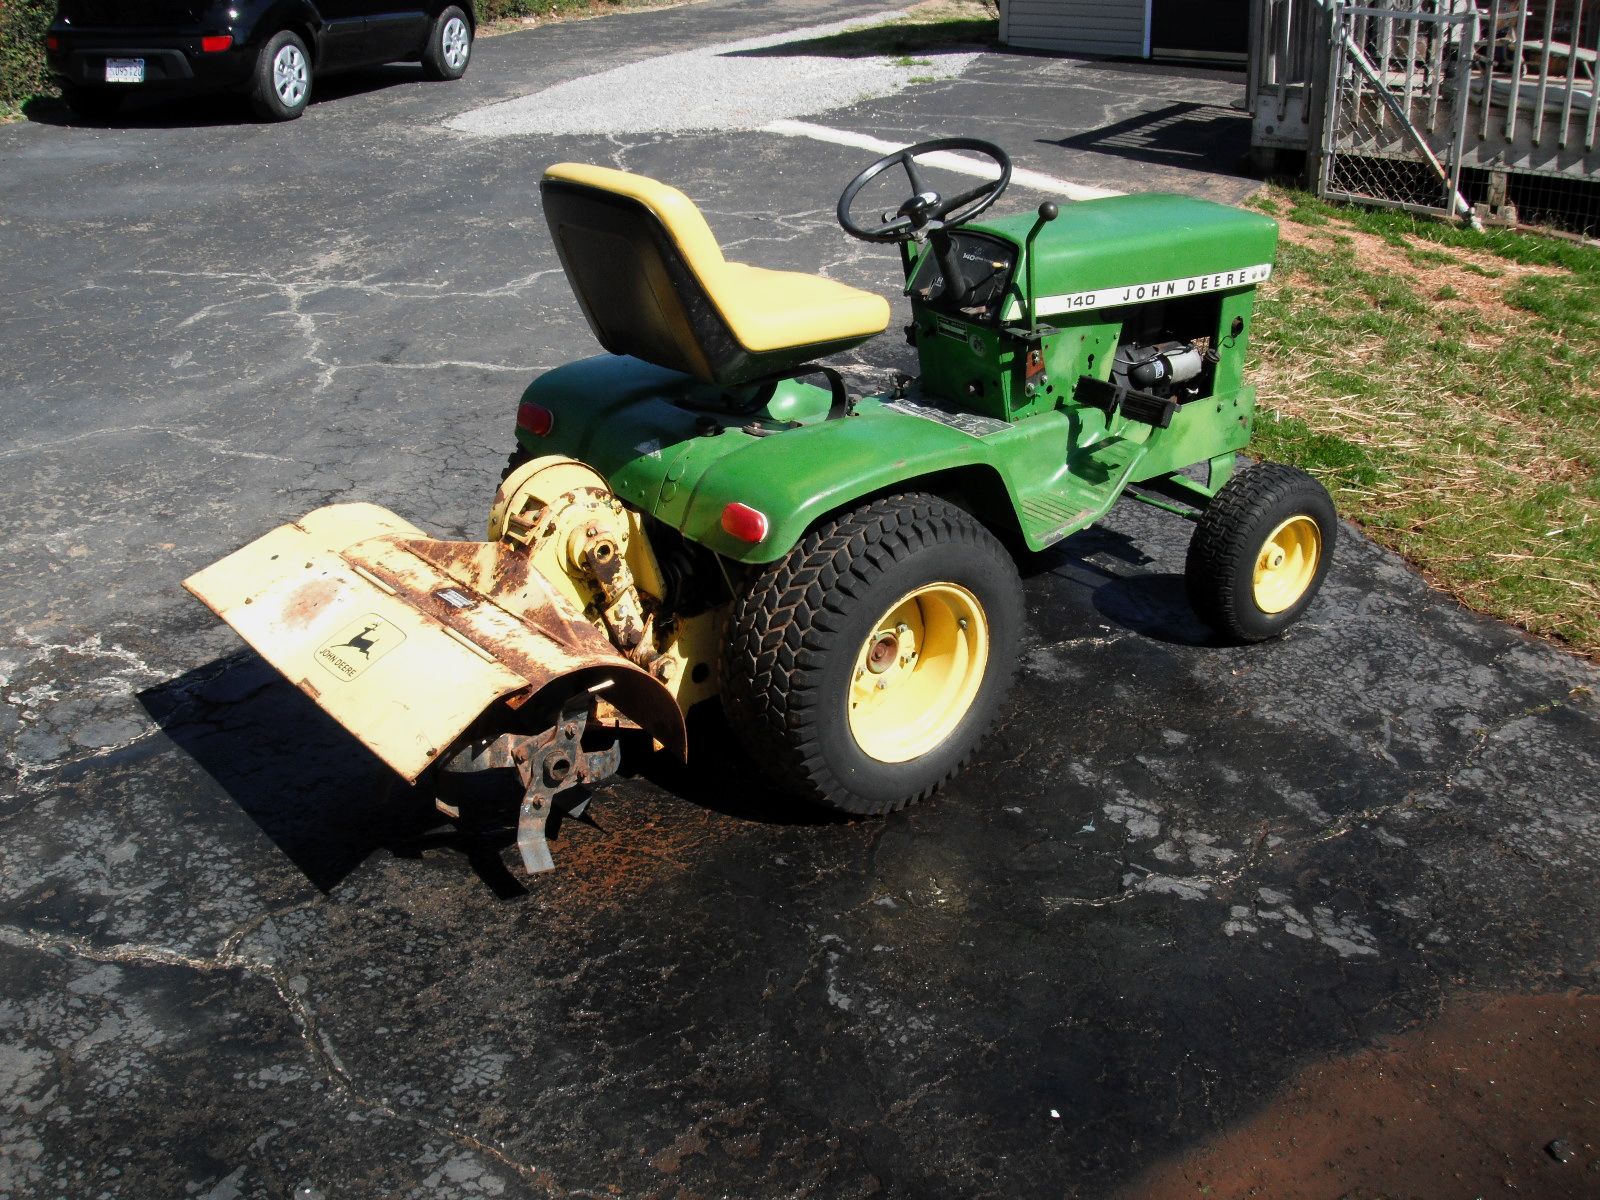 Tiller Attachment For John Deere Riding Lawn Mower : Lawn ...